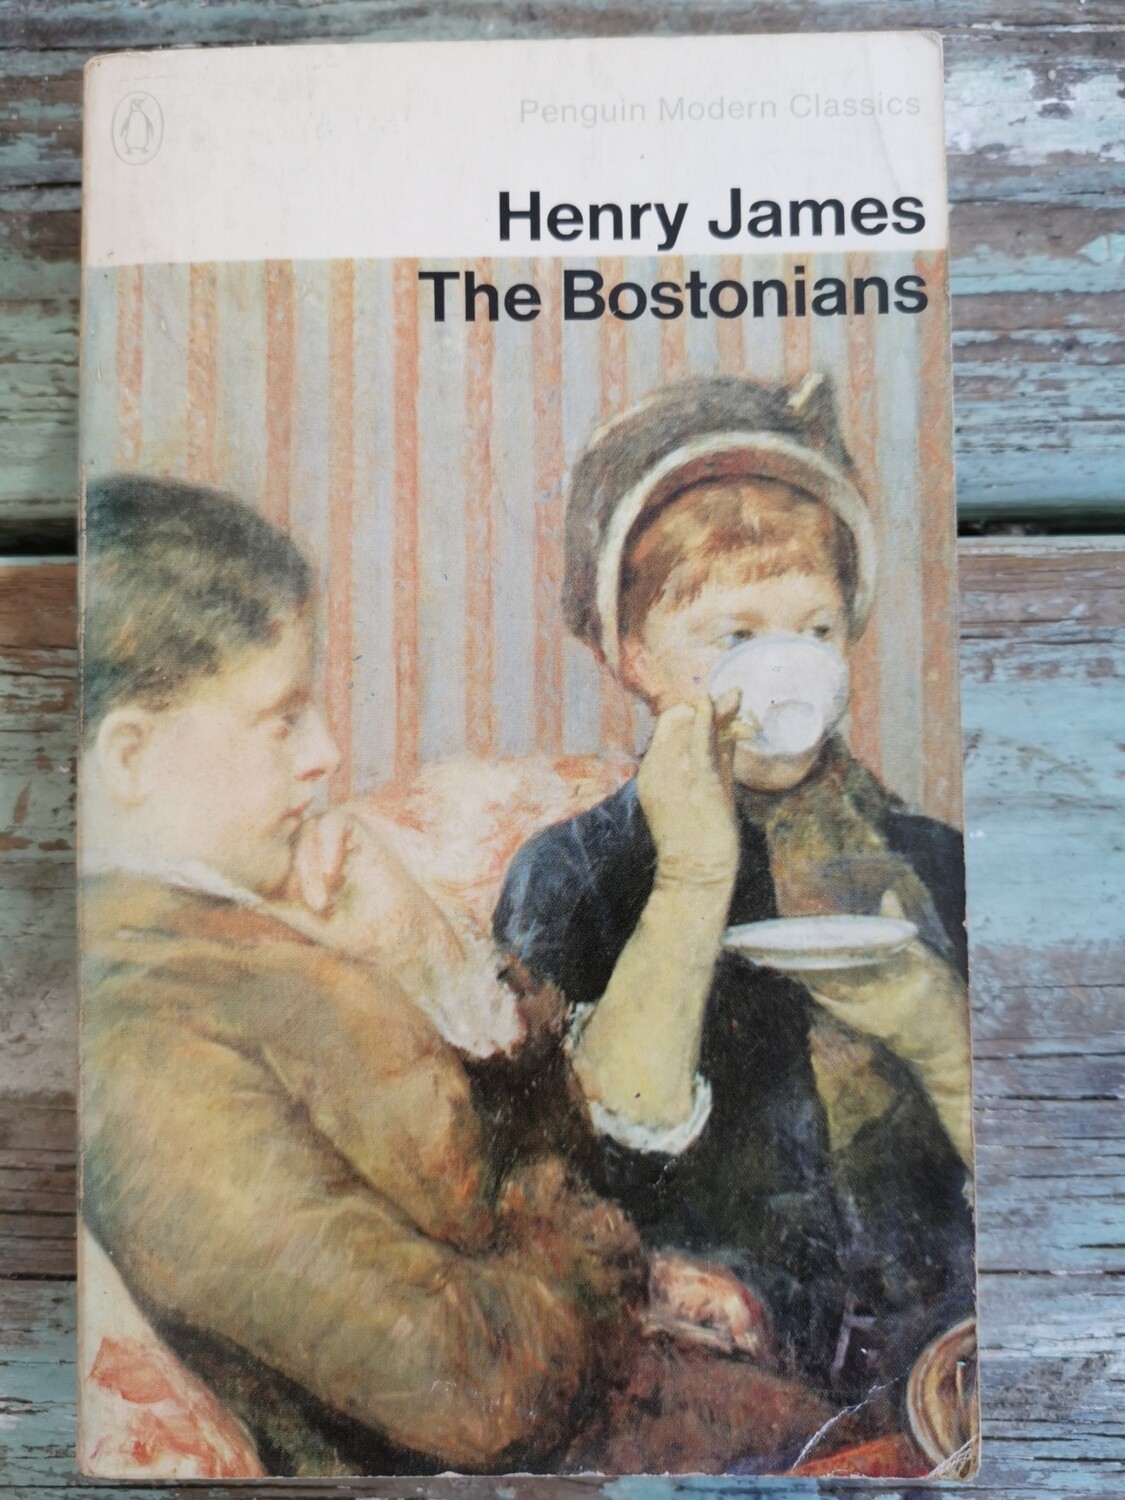 The Boston Ian's, Henry James